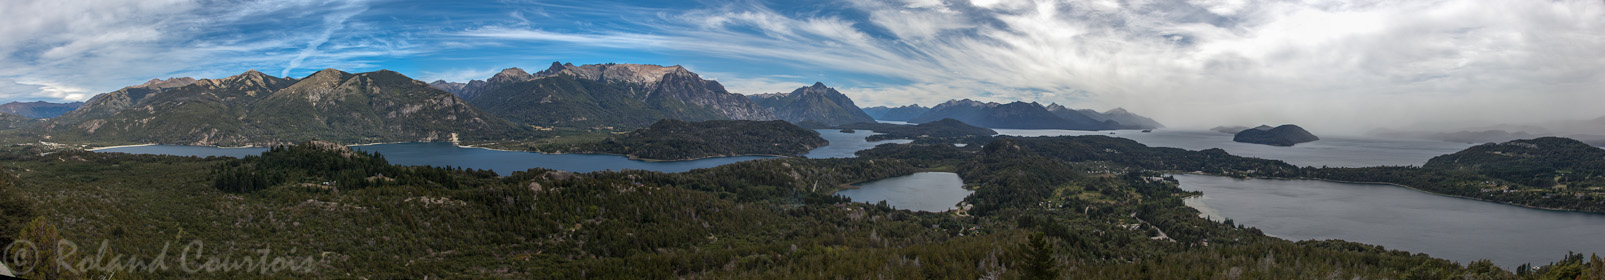 Vue depuis le Cerro Capanario vers les lacs Gutiérrez et Nahuel Huapi